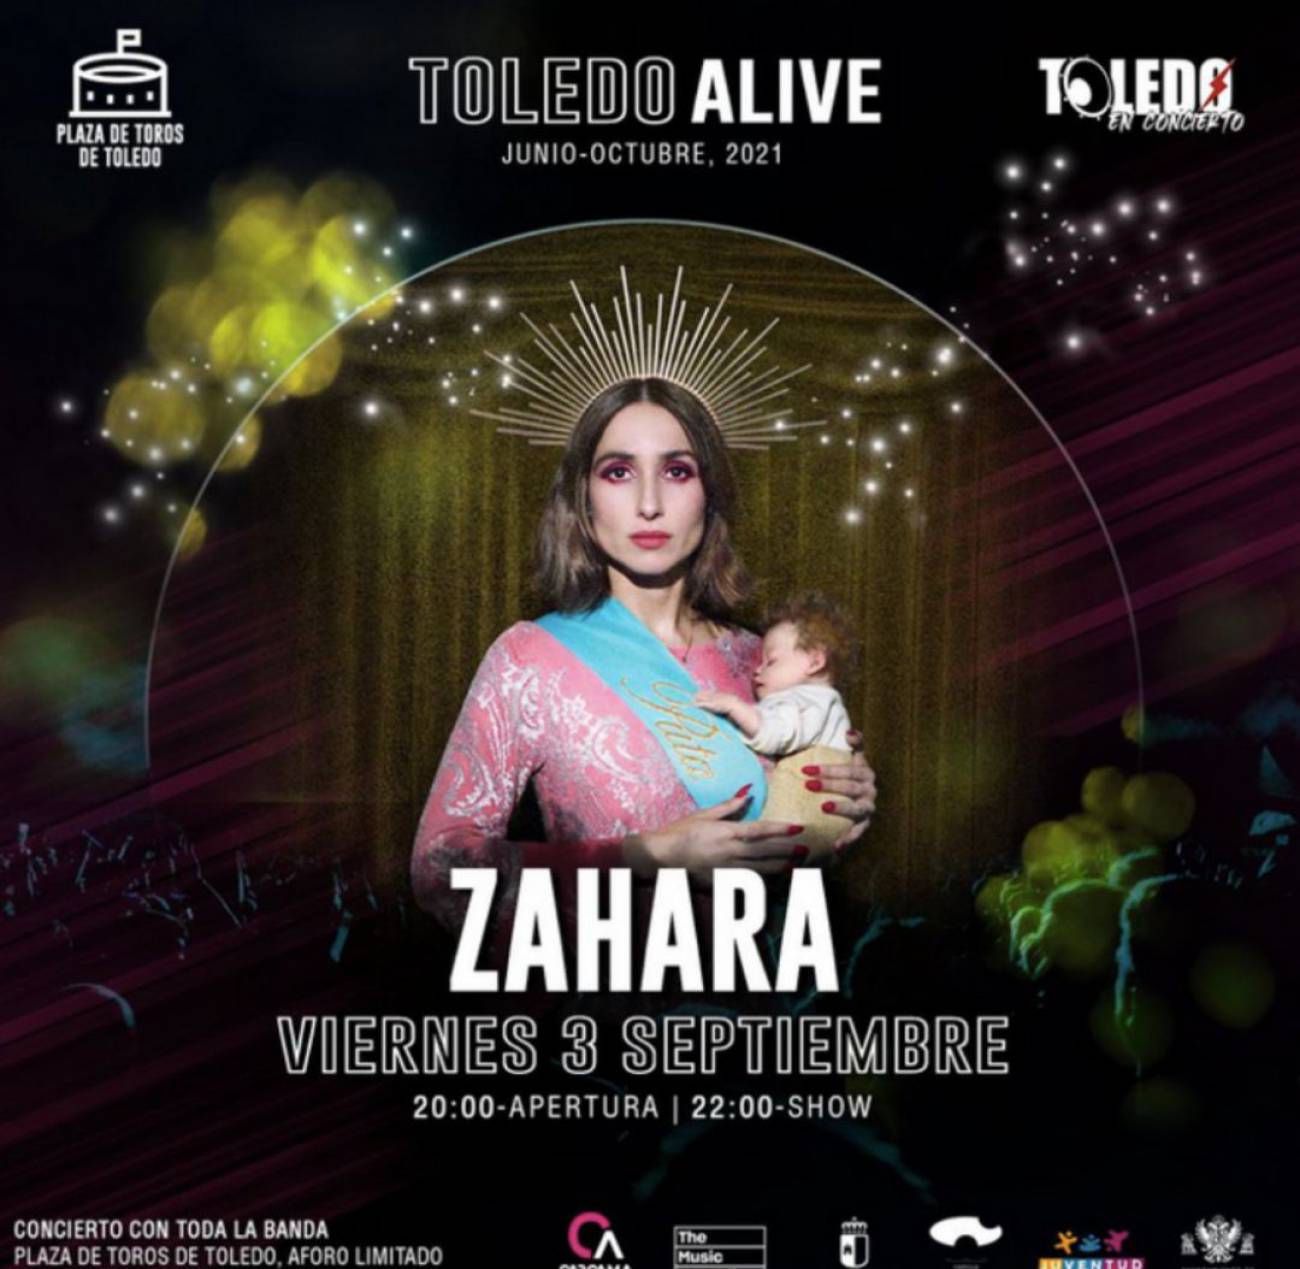 Aluvión de apoyos a la cantante Zahara tras vetarse su cartel en Toledo por las quejas de Vox